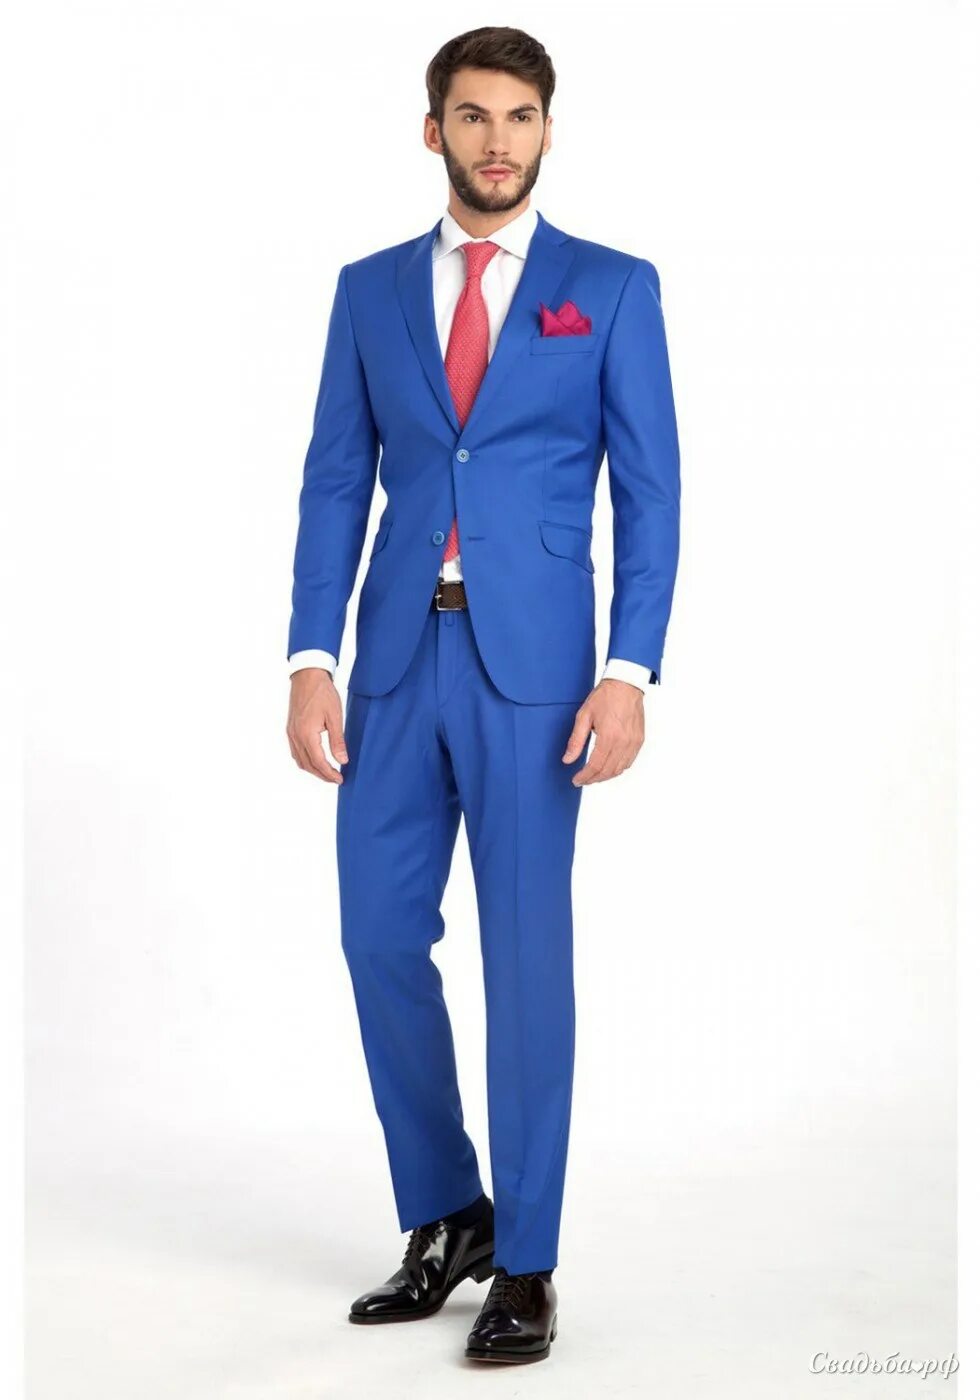 Крокус мужчины в синей одежде. Костюм мужской, синий. Синий костюм мужской с красным галстуком. Ярко синий костюм мужской. Синий костюм мужской с галстуком.